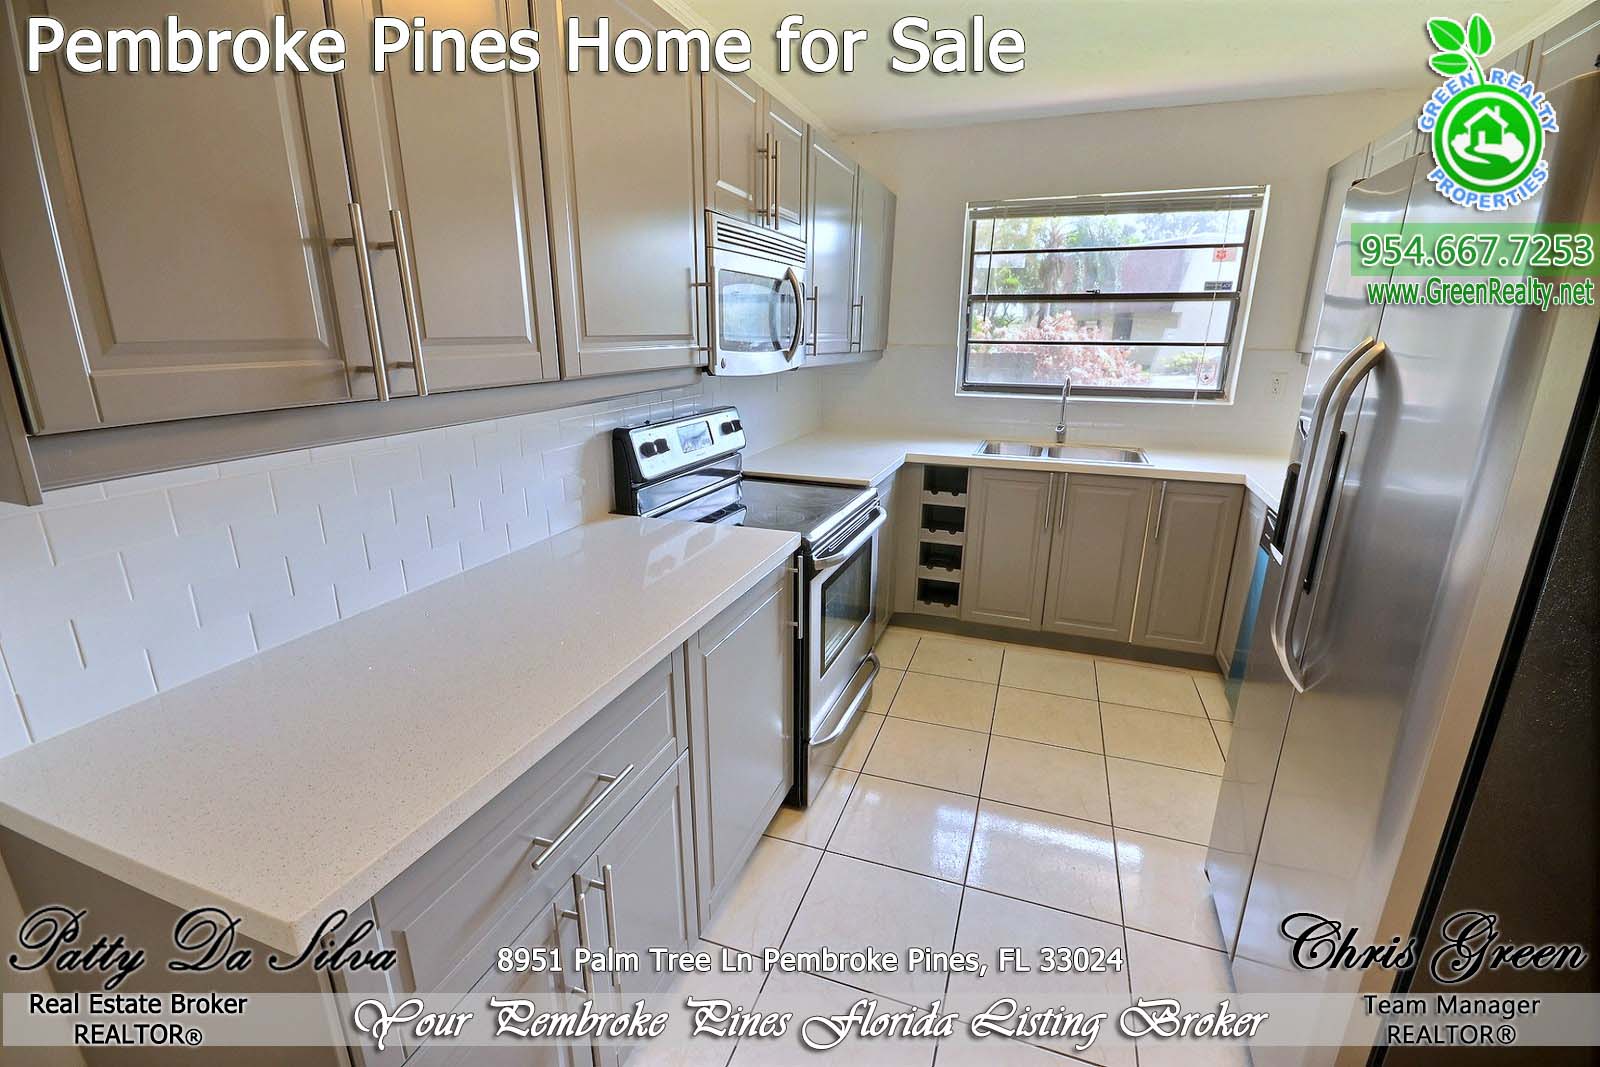 Pembroke Pines Homes For Sale - 8951 Palm Tree Lane (13)